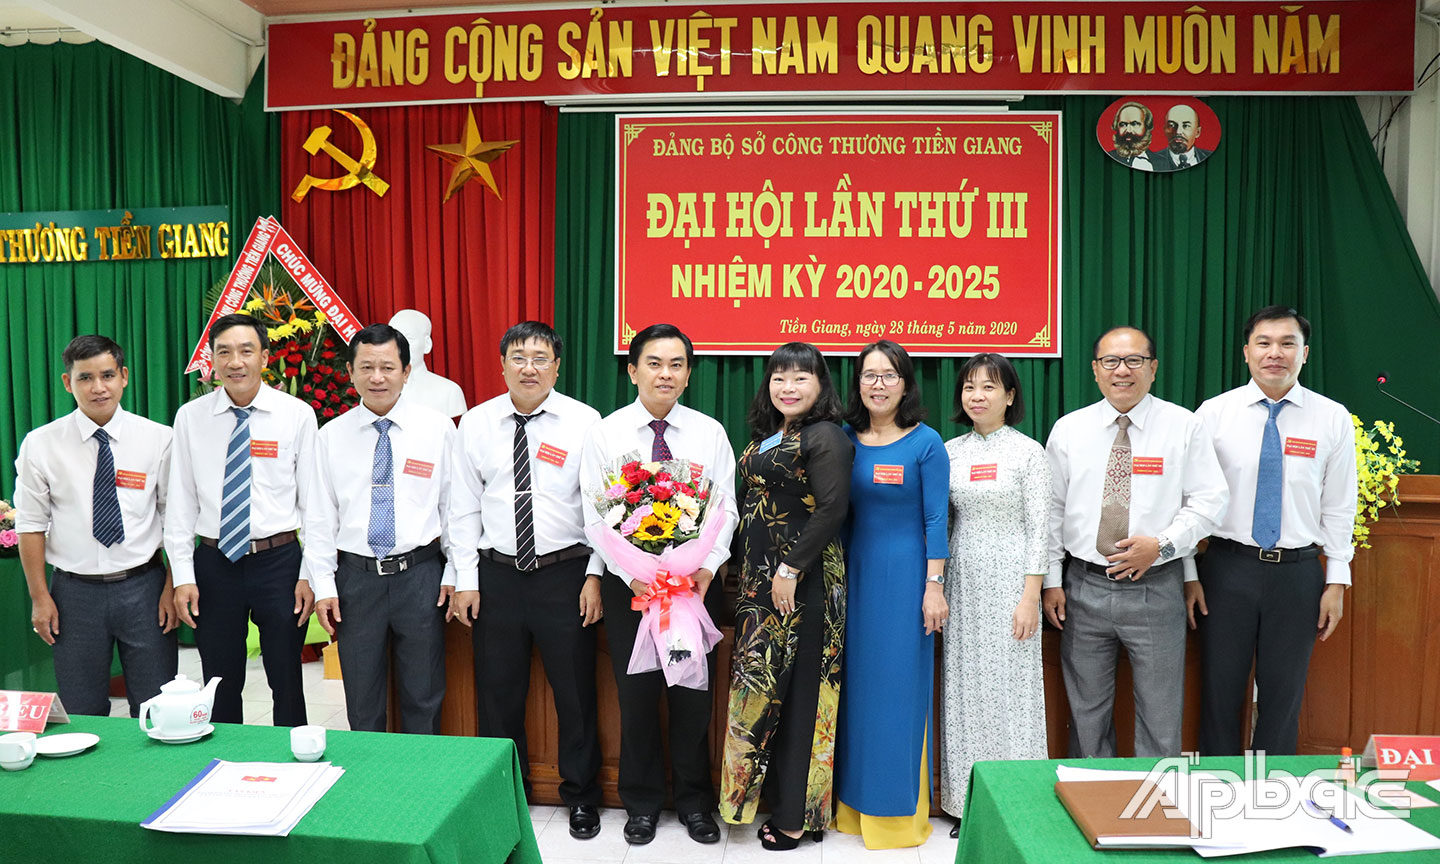 Đồng chí Thái Ngọc Bảo Trâm tặng hoa chúc mừng Ban Chấp hành Đảng bộ Sở Công thương nhiệm kỳ mới.